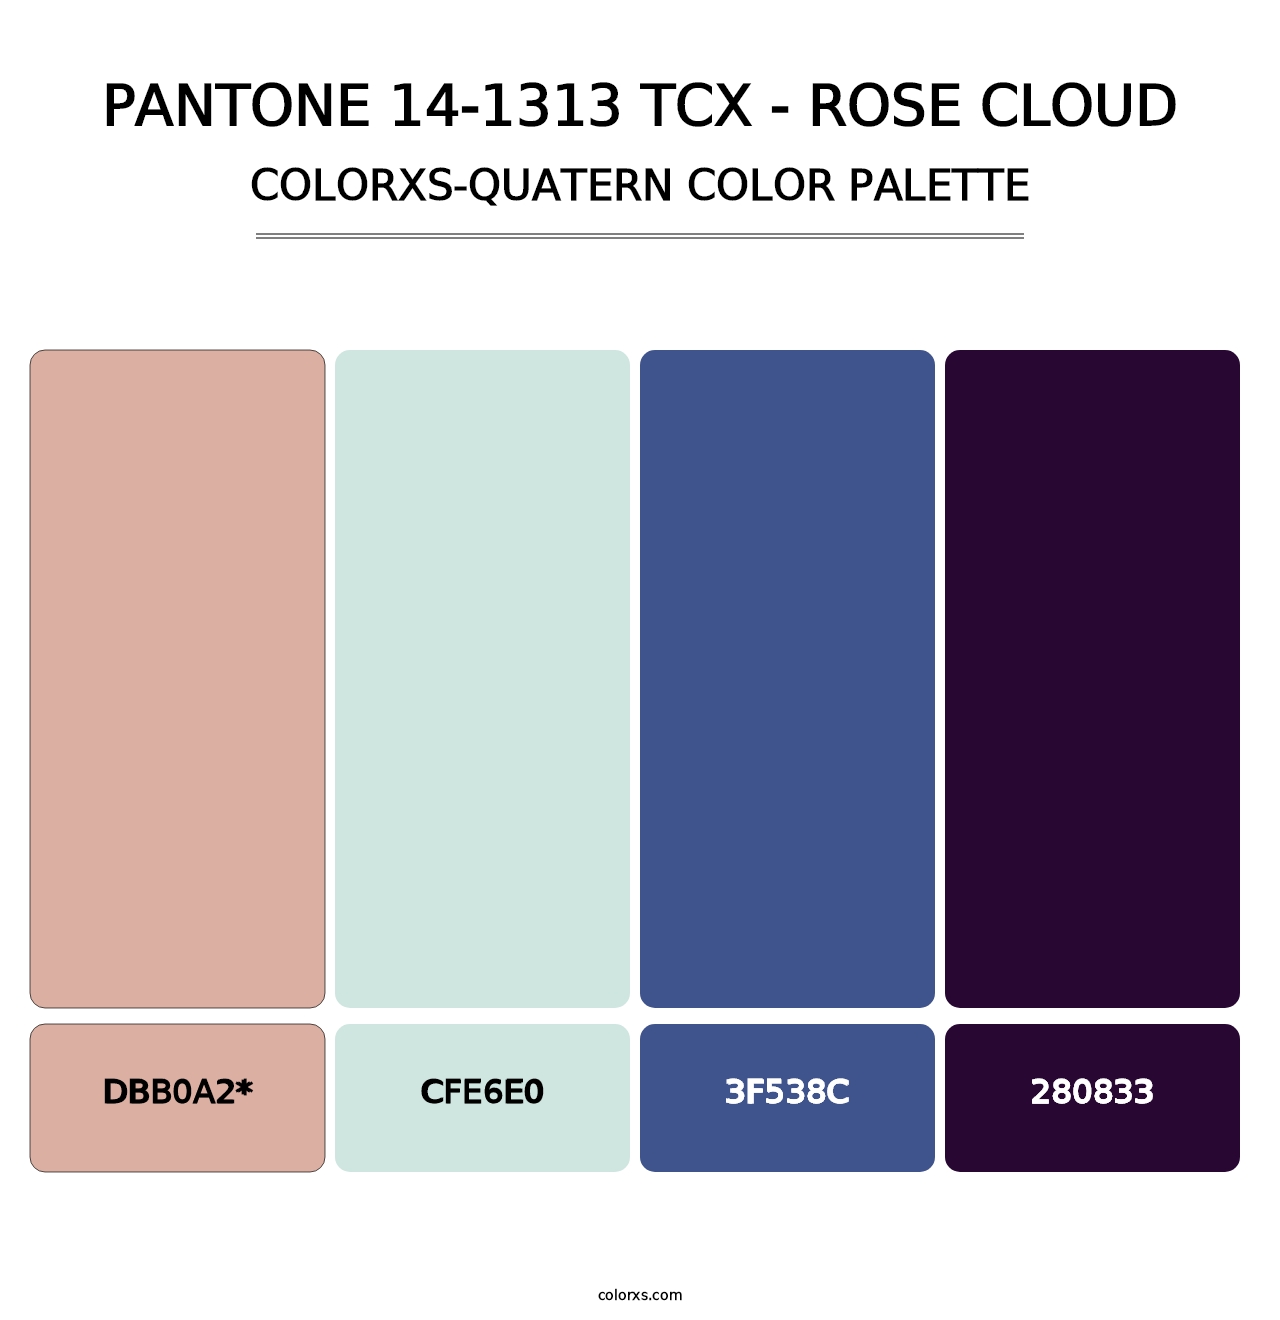 PANTONE 14-1313 TCX - Rose Cloud - Colorxs Quatern Palette